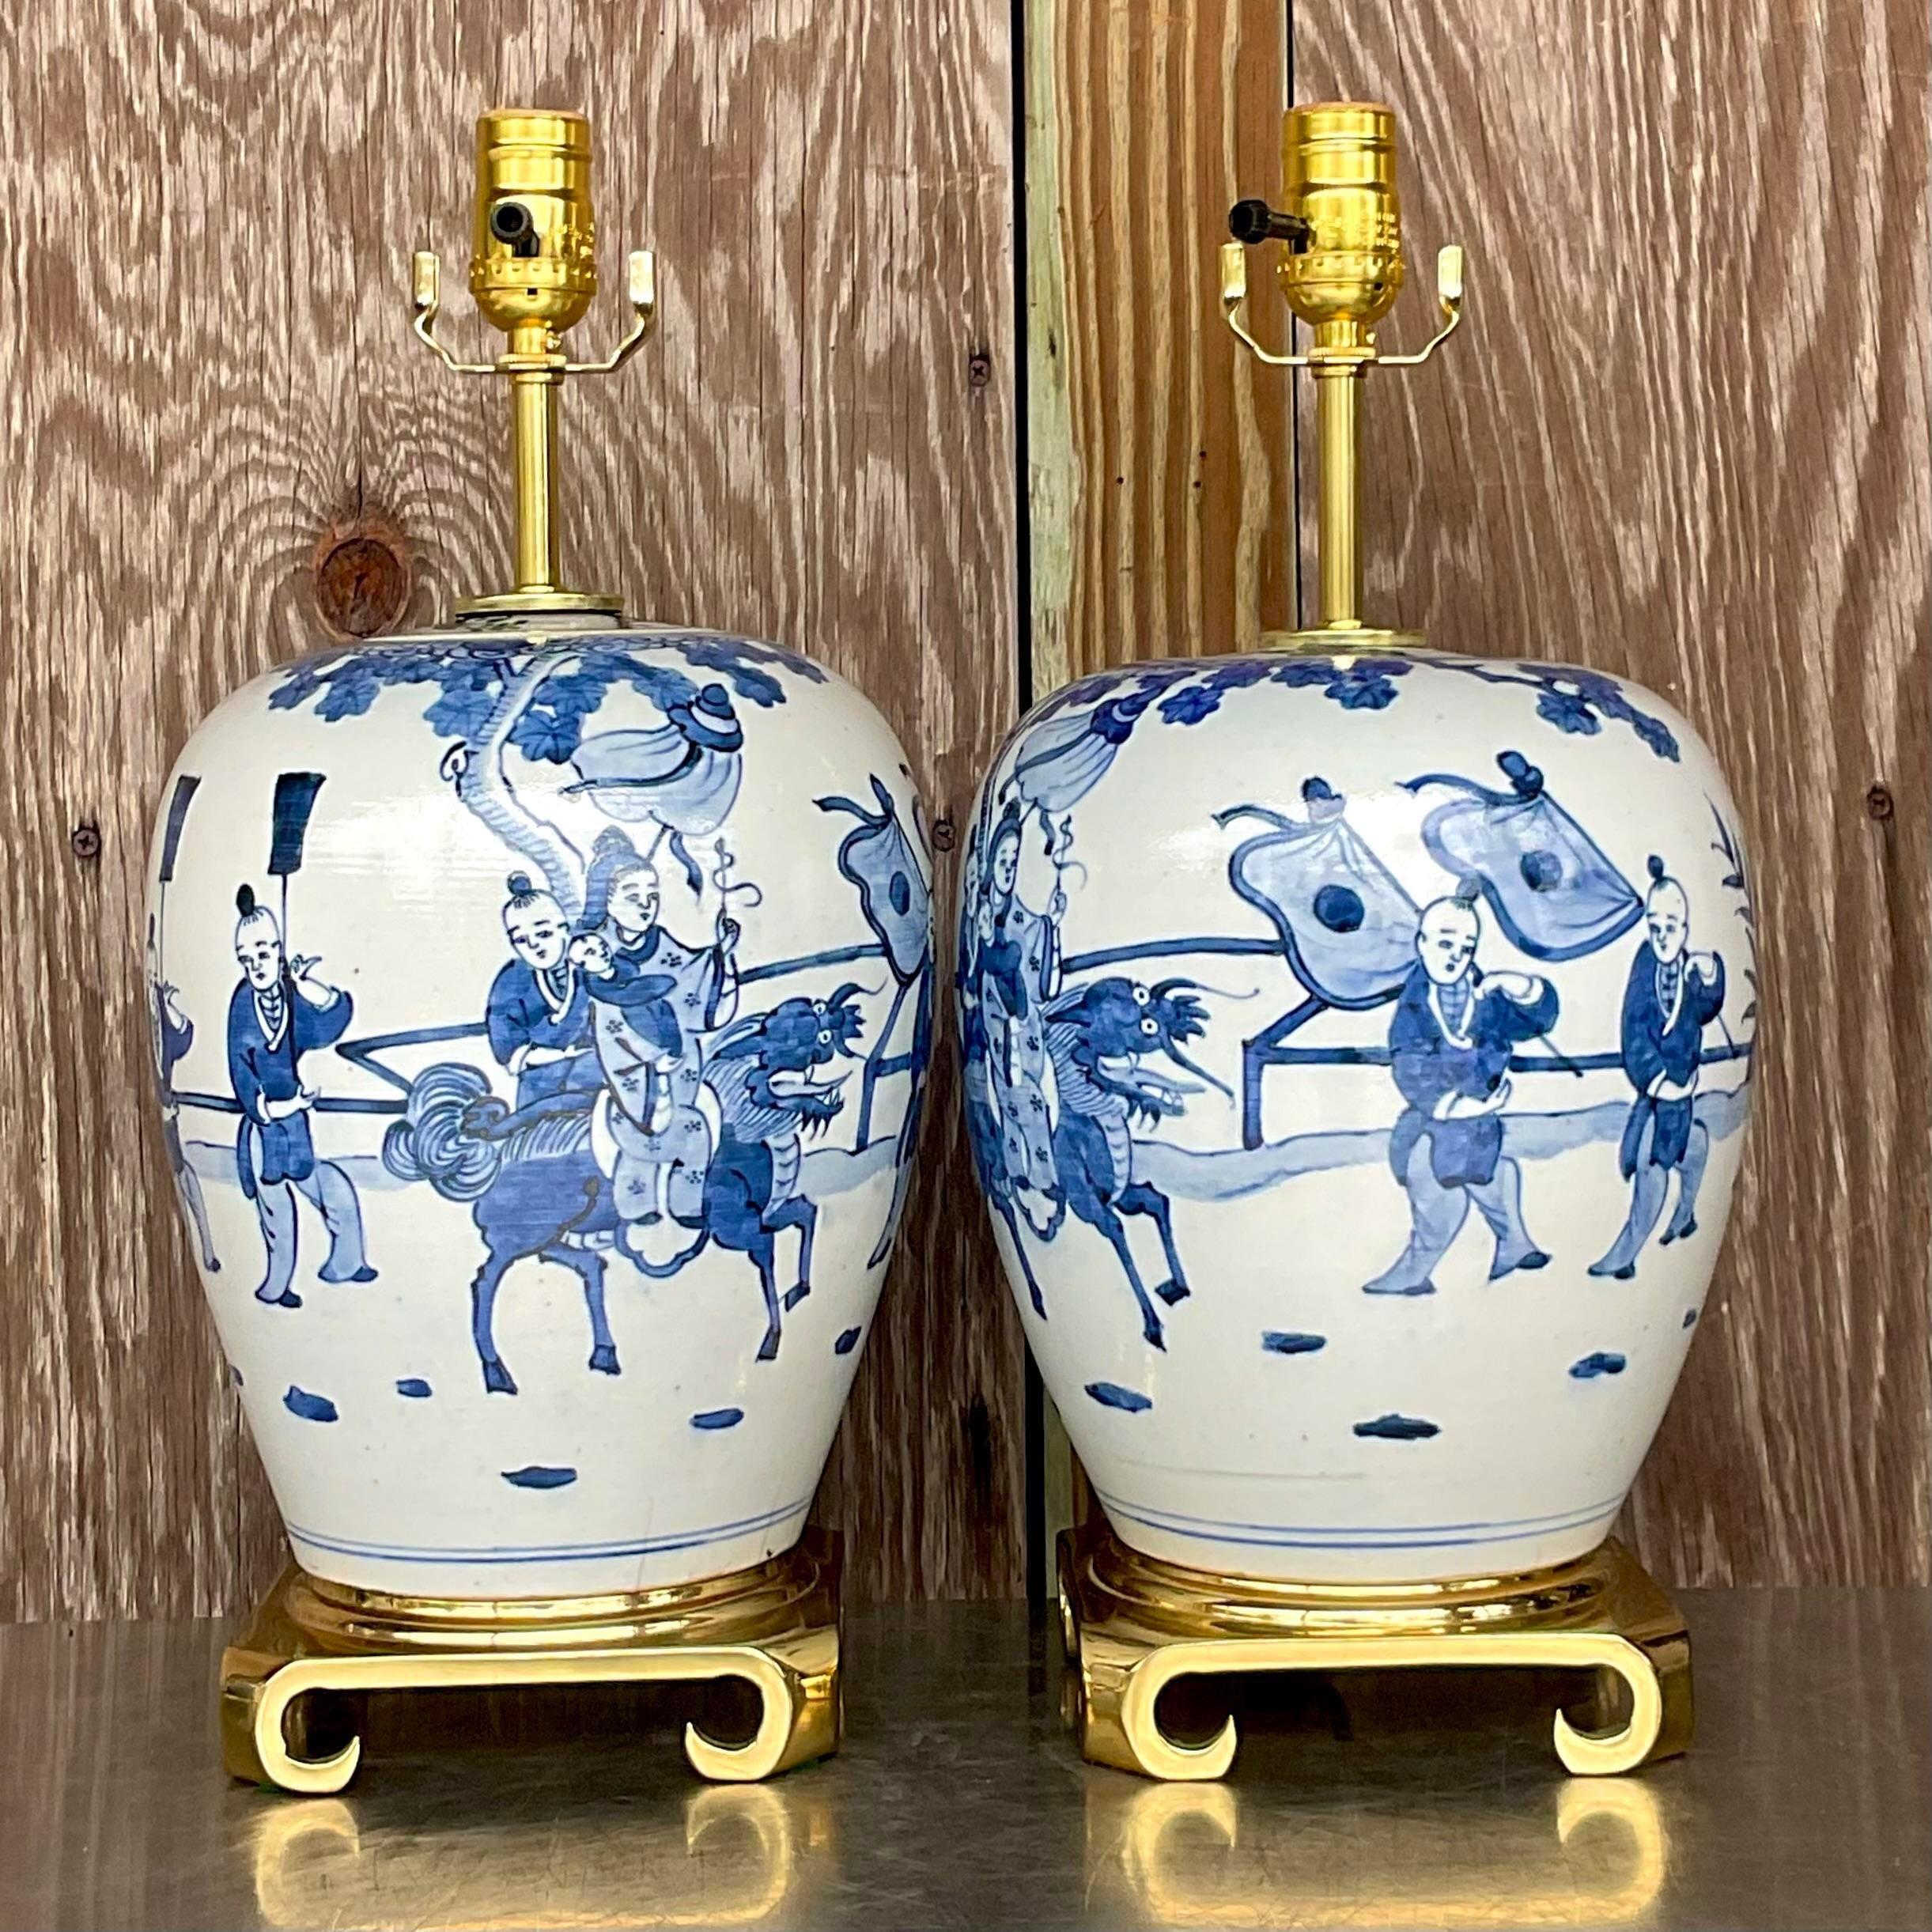 Une fabuleuse paire de lampes de table asiatiques vintage. Une magnifique céramique émaillée dans un motif classique bleu et blanc. Un magnifique motif pastoral peint à la main. Entièrement restauré avec des pièces de quincaillerie, un câblage et